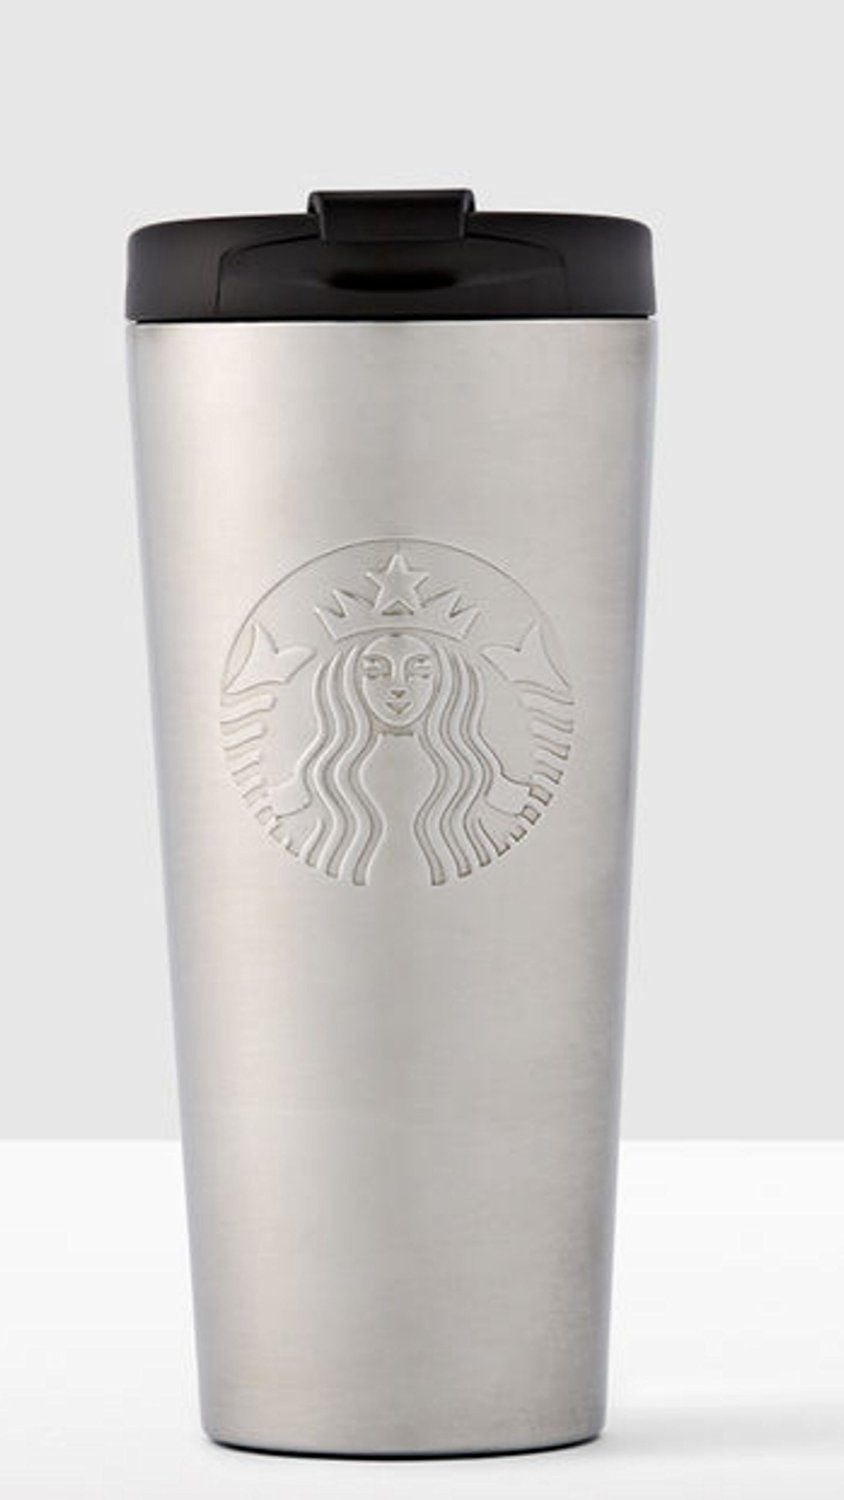 Starbucks Stainless Steel Travel Mug 16 Oz